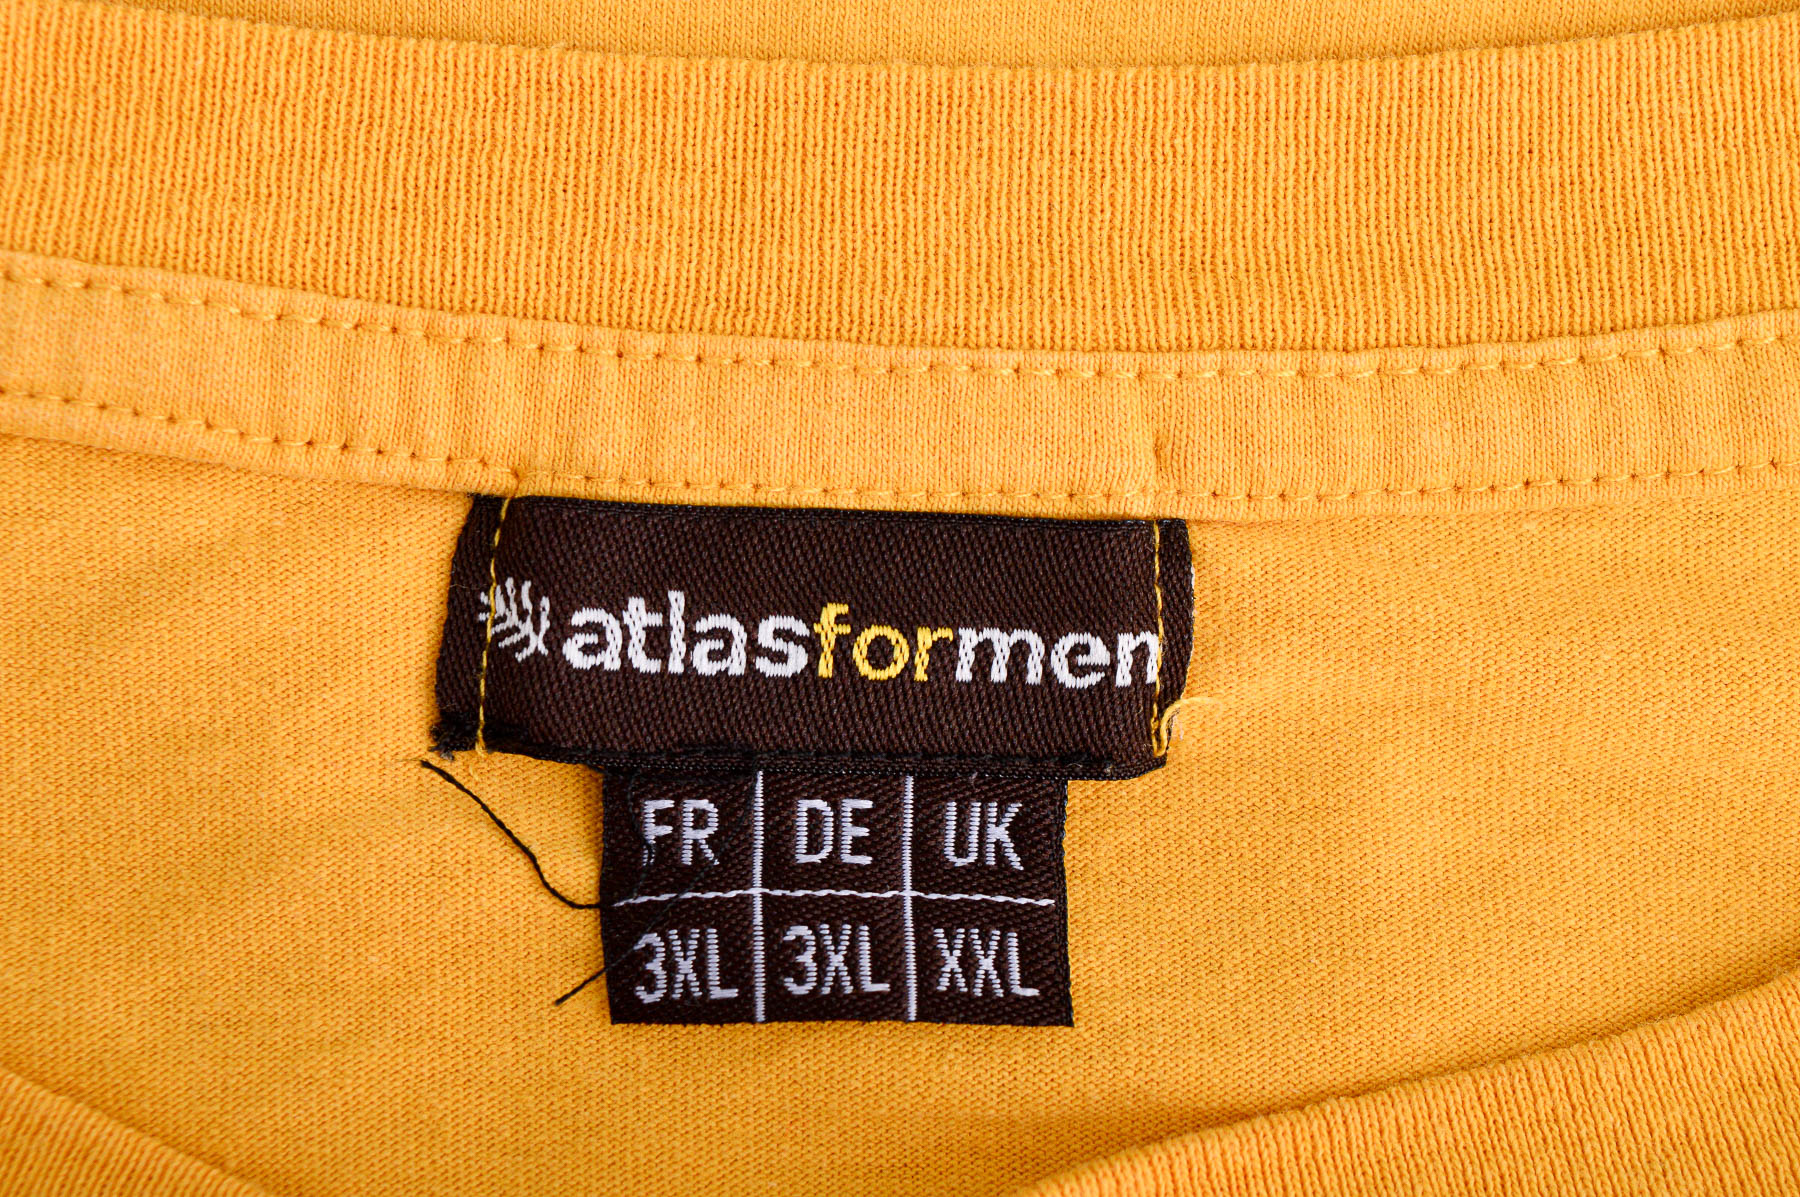 Αντρική μπλούζα - ATLAS for MEN - 2